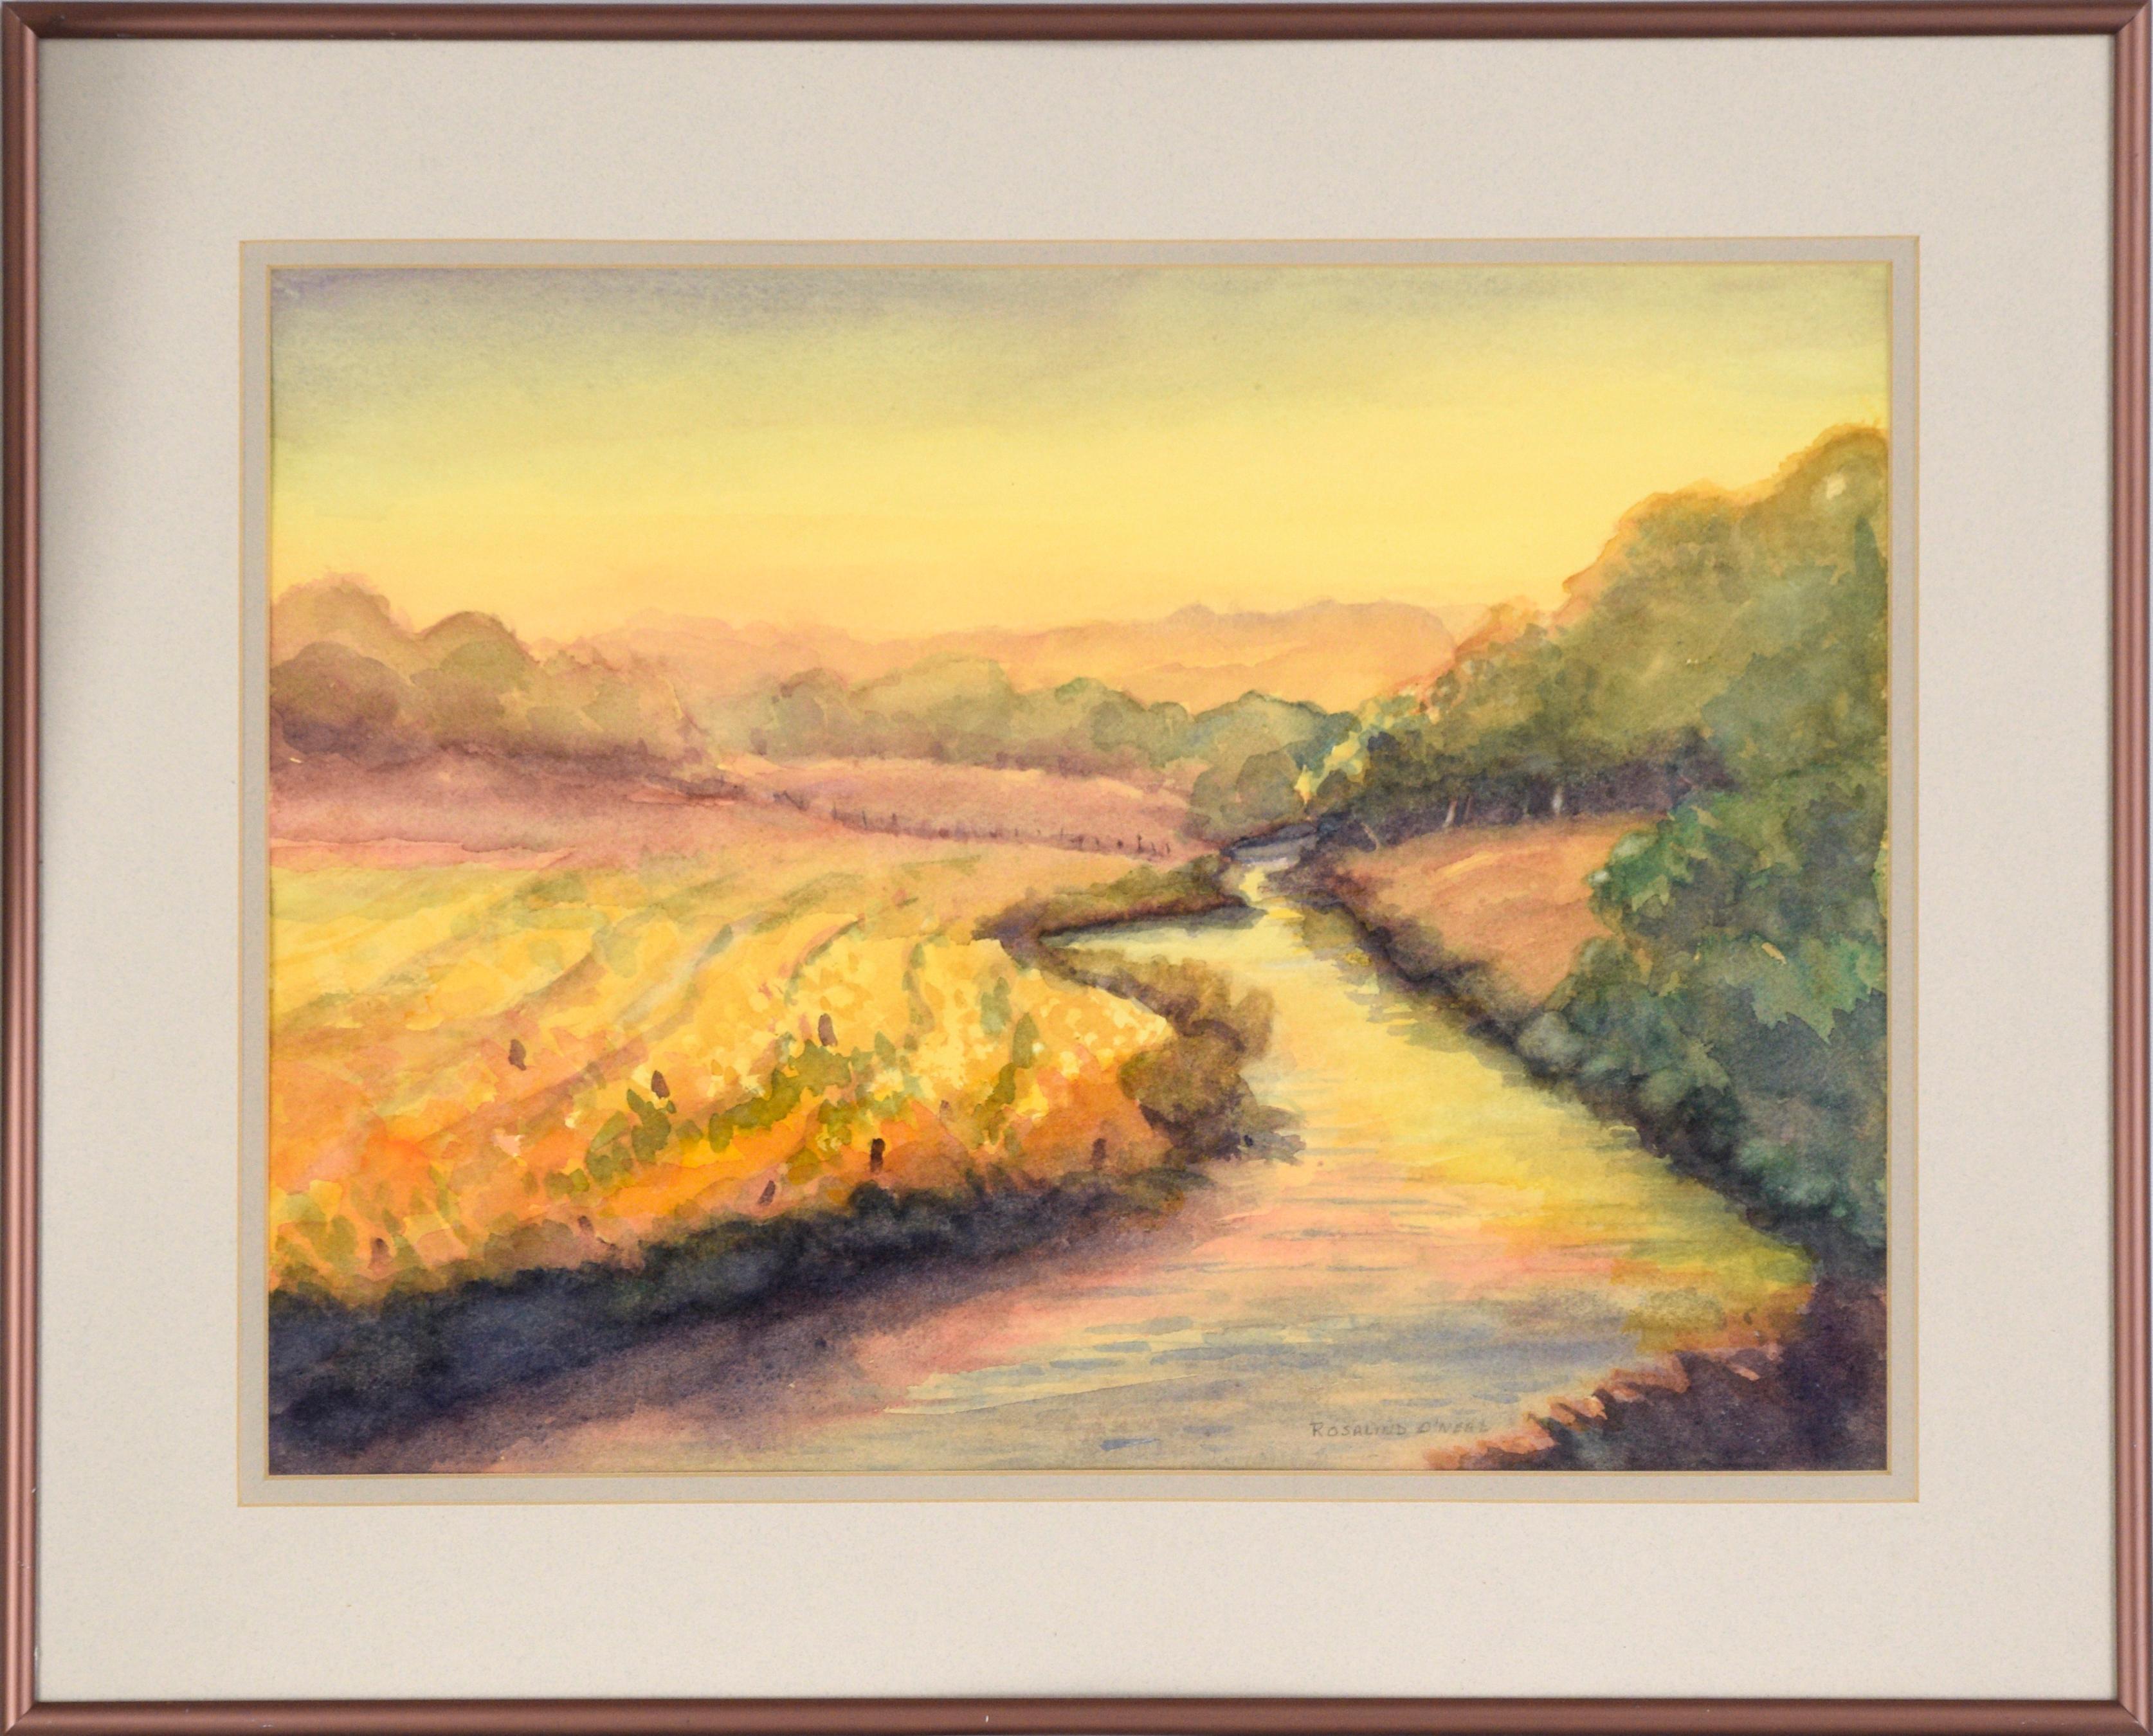 Golden Hour at the River (Gold Hour at the River) - paysage à l'aquarelle sur papier